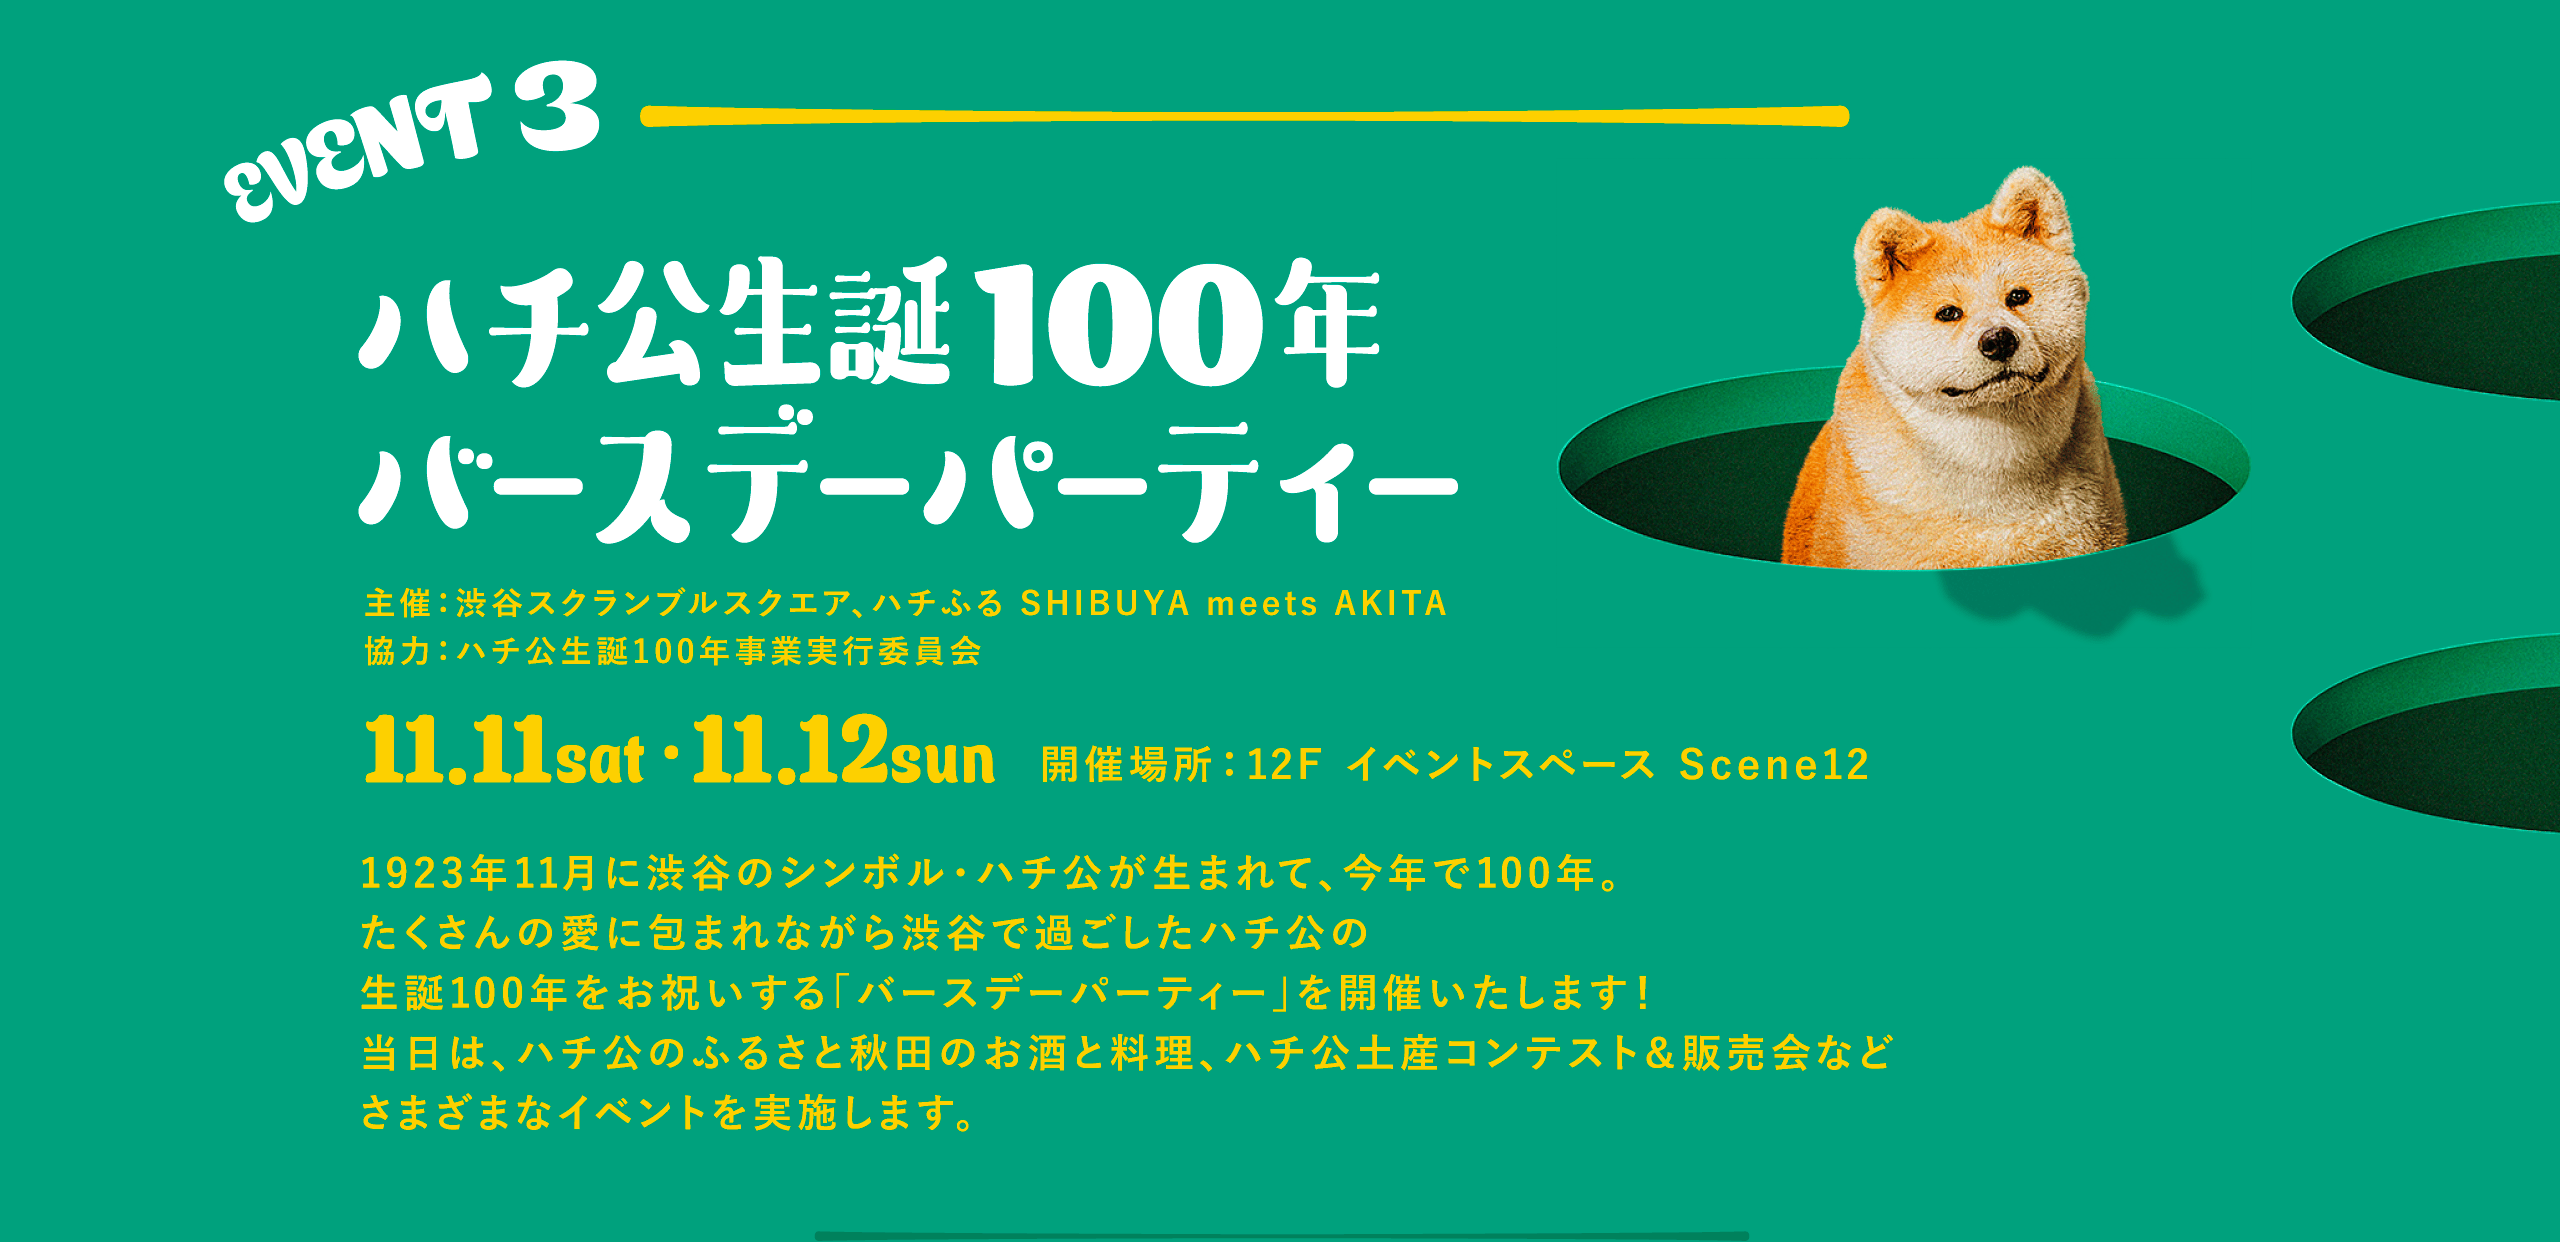 EVENT3 ハチ公生誕100年バースデーパーティー 1923年11月に渋谷のシンボル・ハチ公が生まれて、今年で100年。たくさんの愛に包まれながら渋谷で過ごしたハチ公の生誕100年をお祝いする「バースデーパーティー」を開催いたします！当日は、ハチ公のふるさと秋田のお酒と料理、ハチ公土産コンテスト＆販売会などさまざまなイベントを実施します。